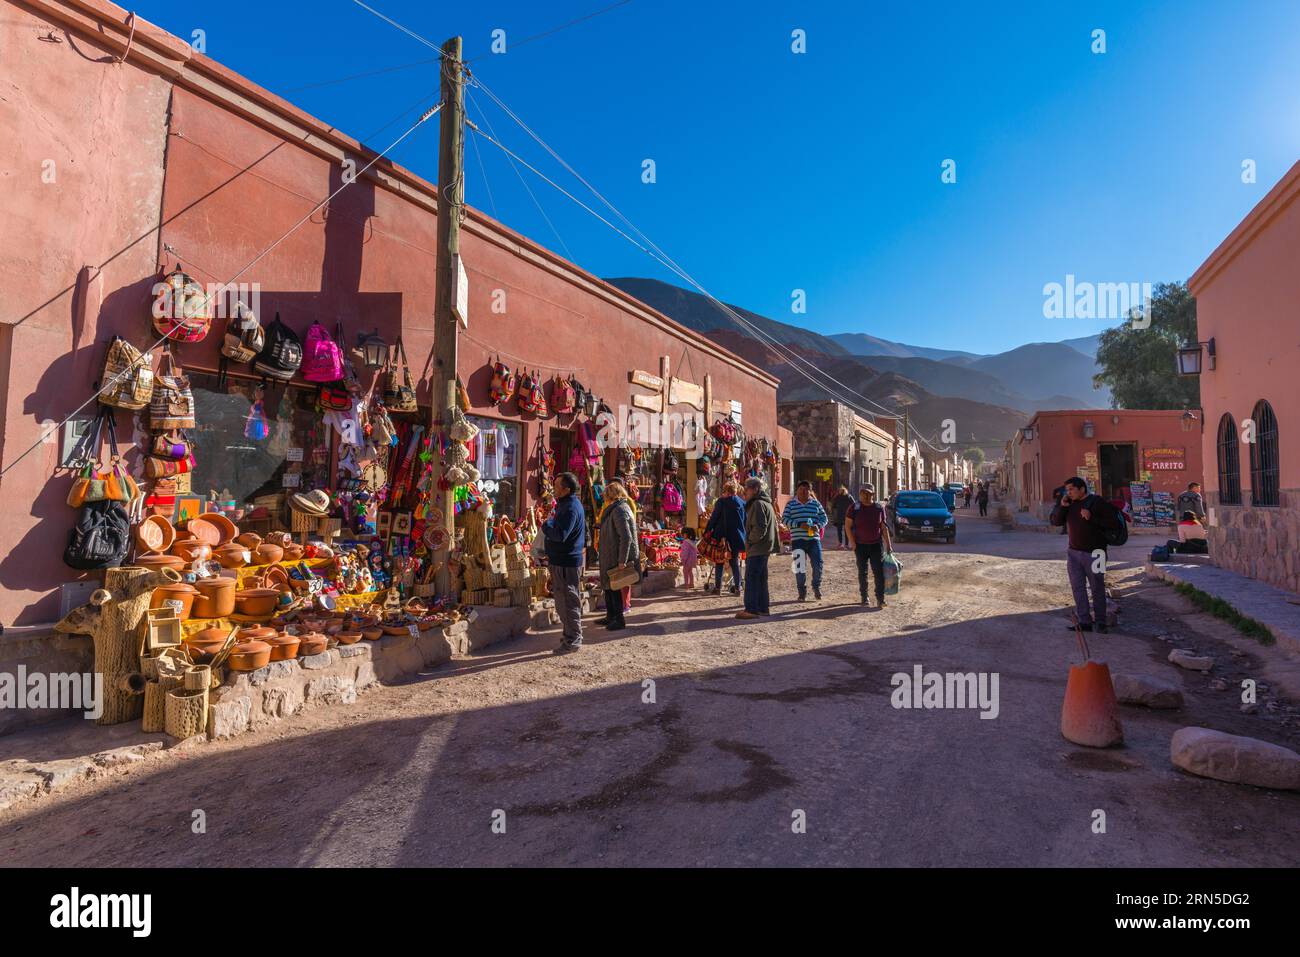 Marché vendant des produits locaux, Purmamarca, Quebrada Humahuaca, site du patrimoine mondial de l'UNESCO, province de Jujuy, maisons en adobe, rue, touristes, textiles Banque D'Images